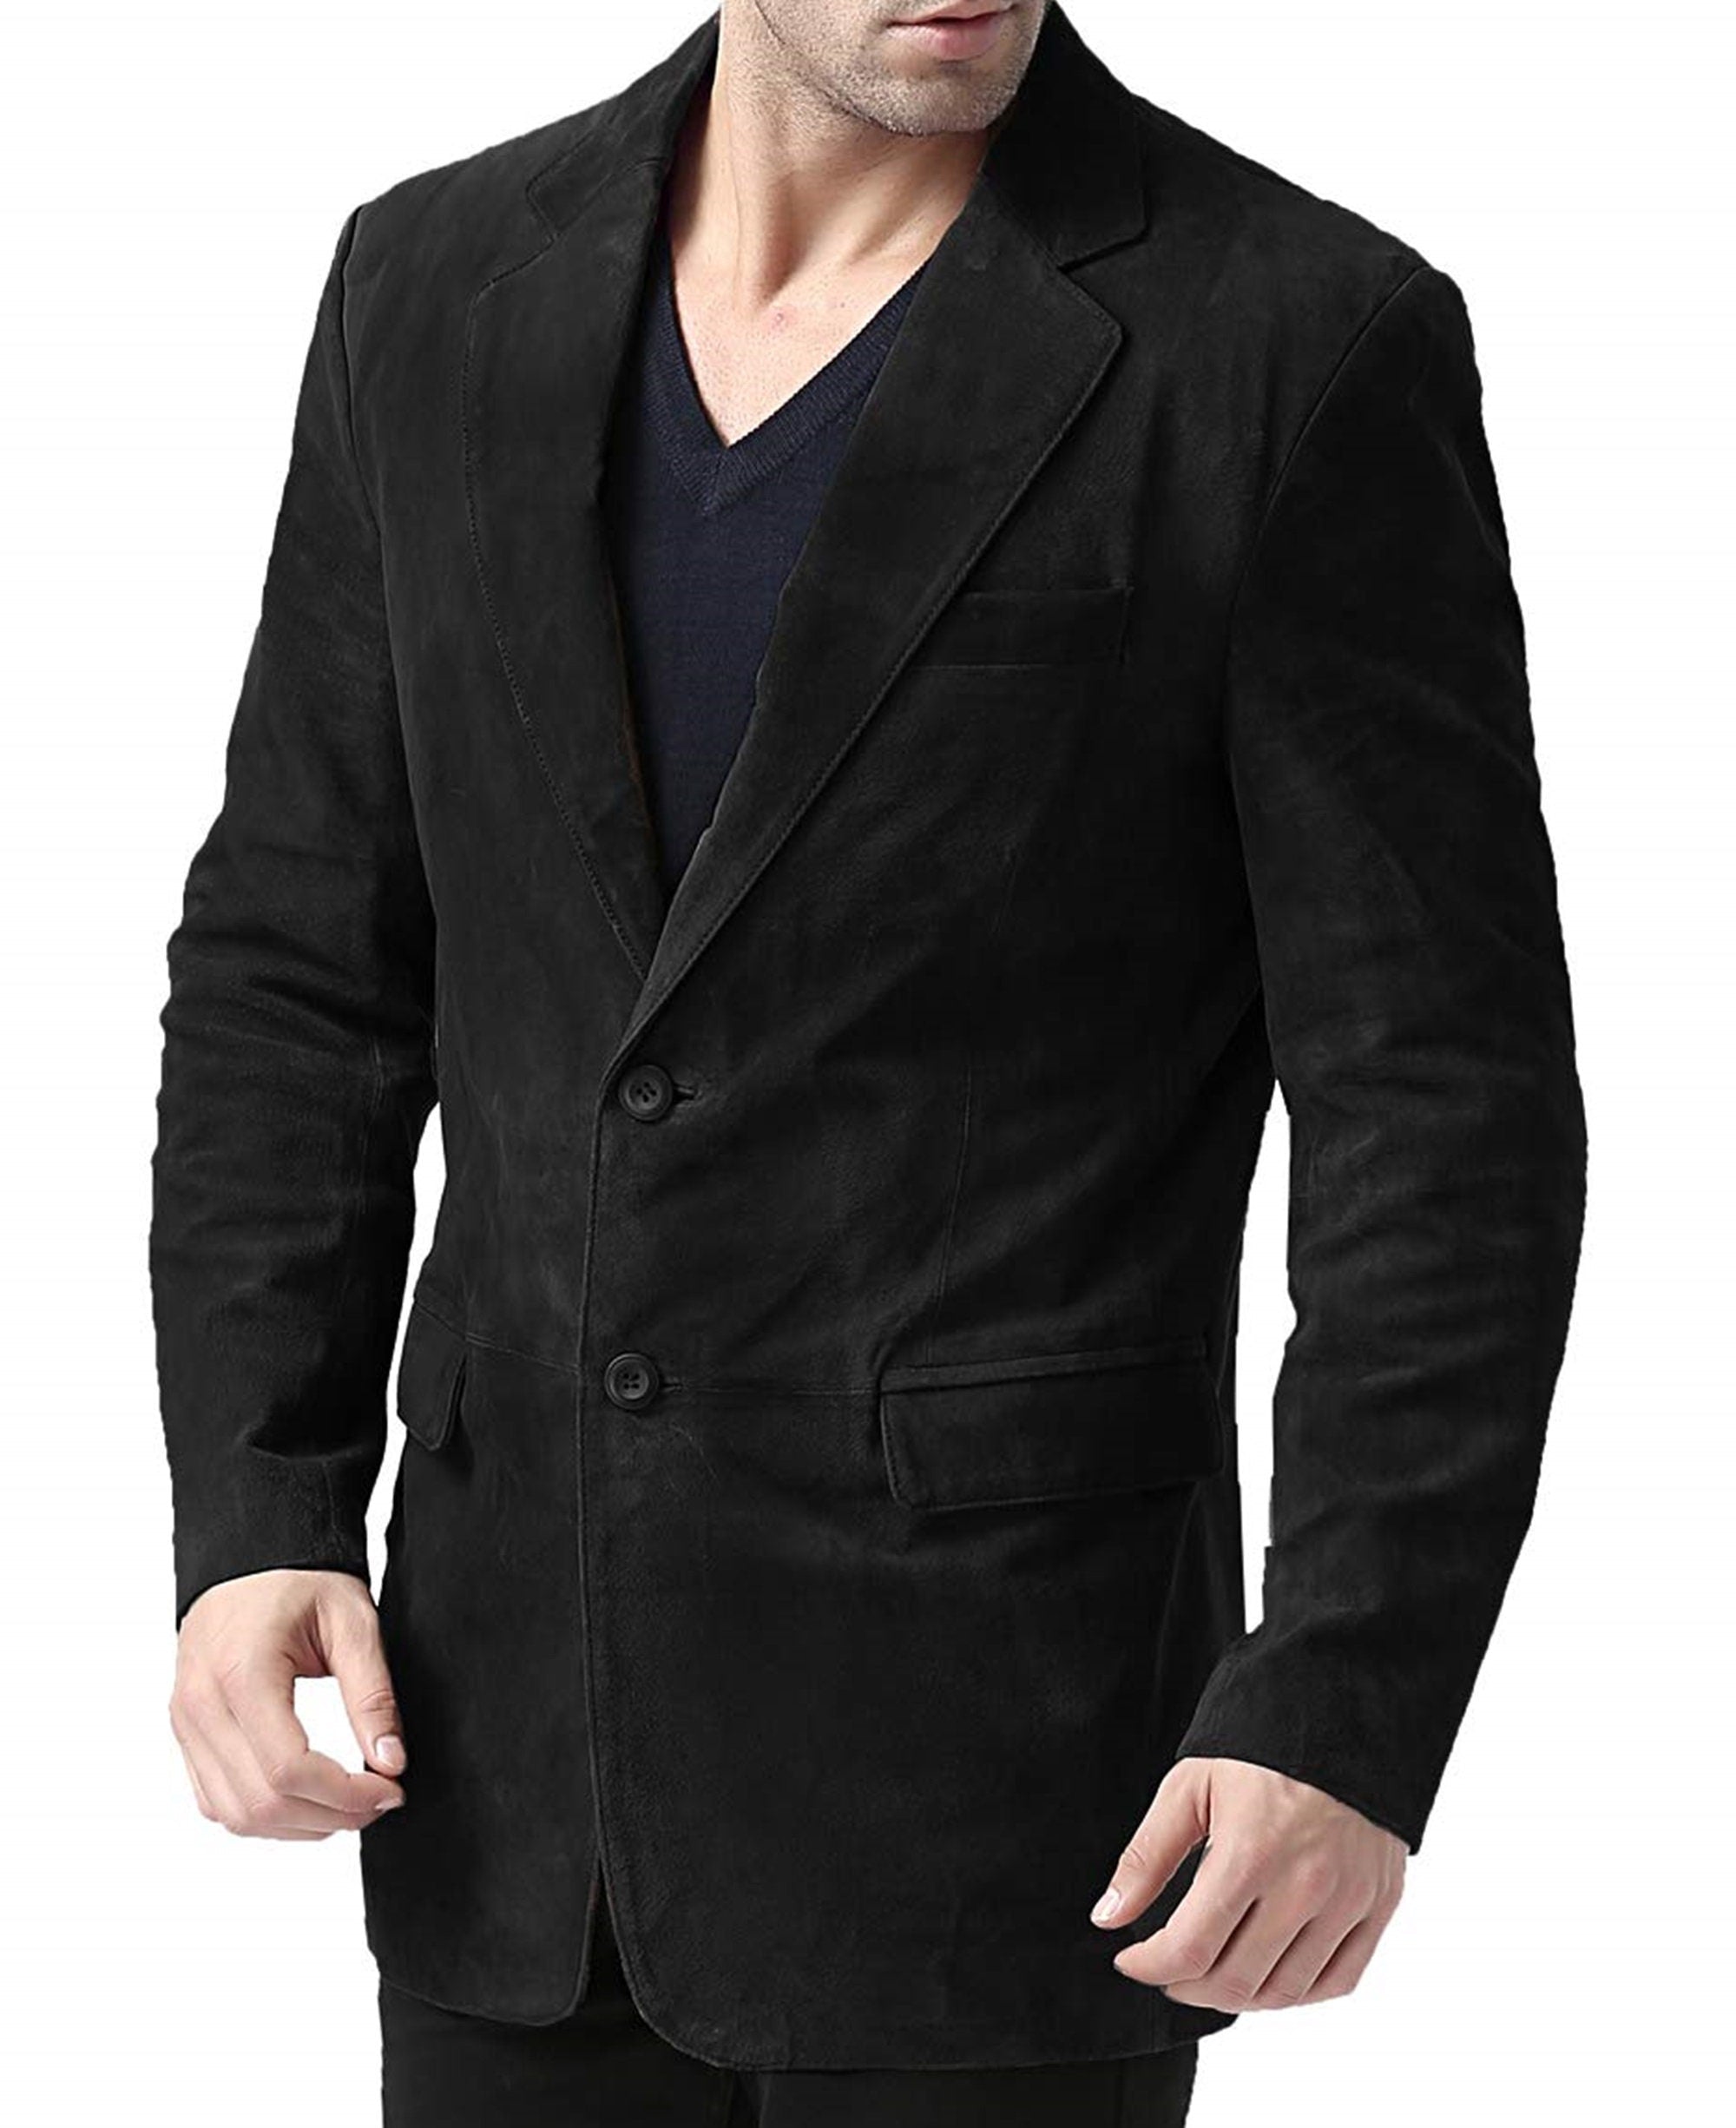 Black Suede Blazer Coat For Mens